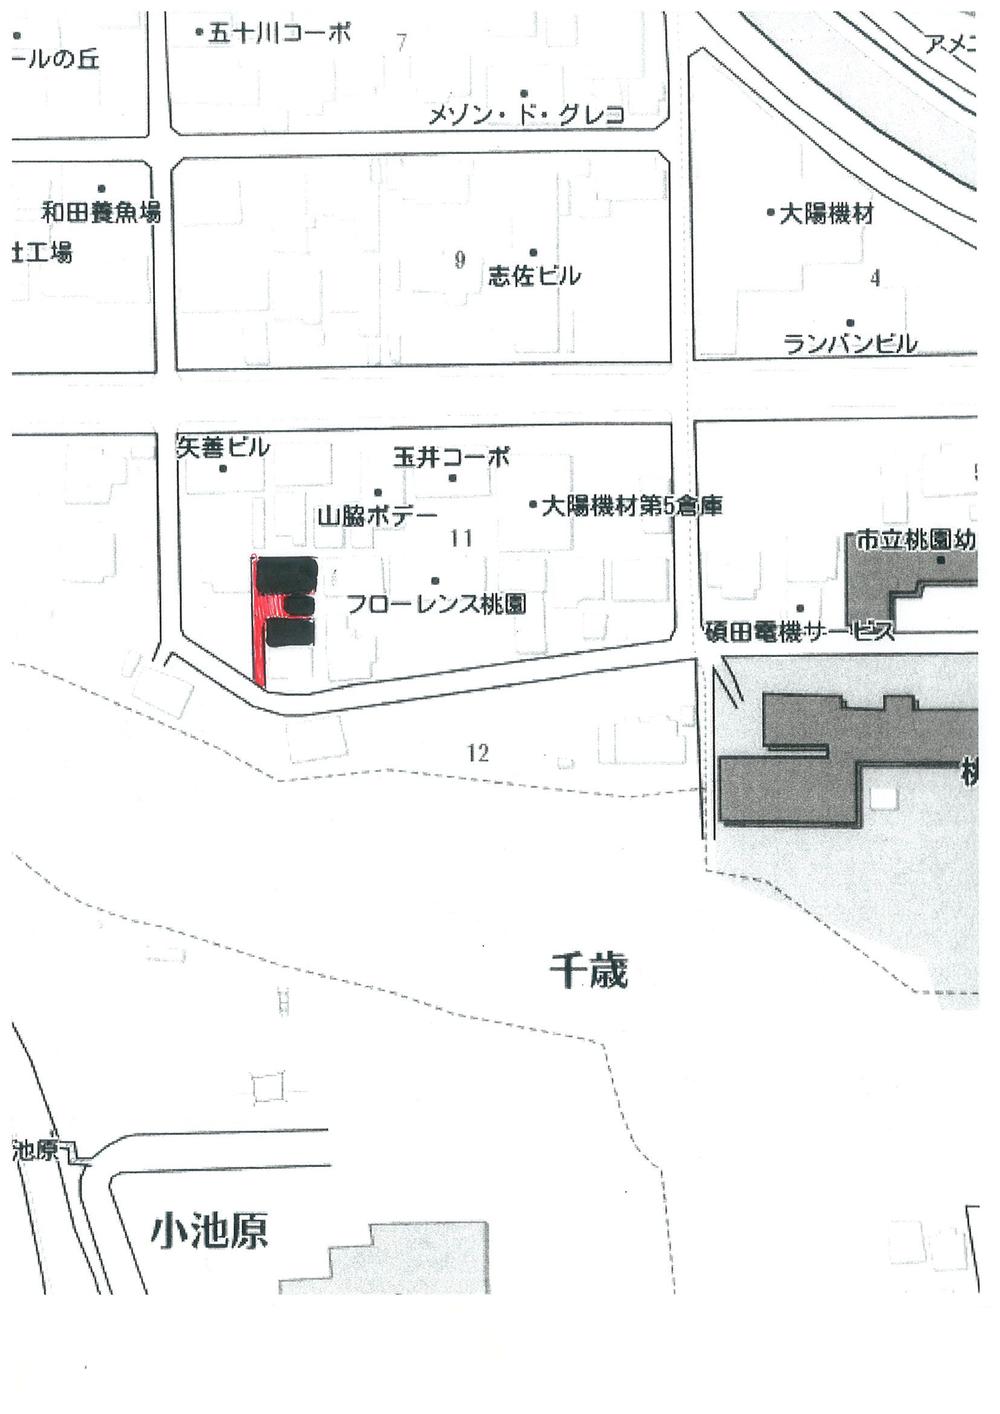 Compartment figure. 14.9 million yen, 5DK, Land area 363.29 sq m , Building area 111.8 sq m